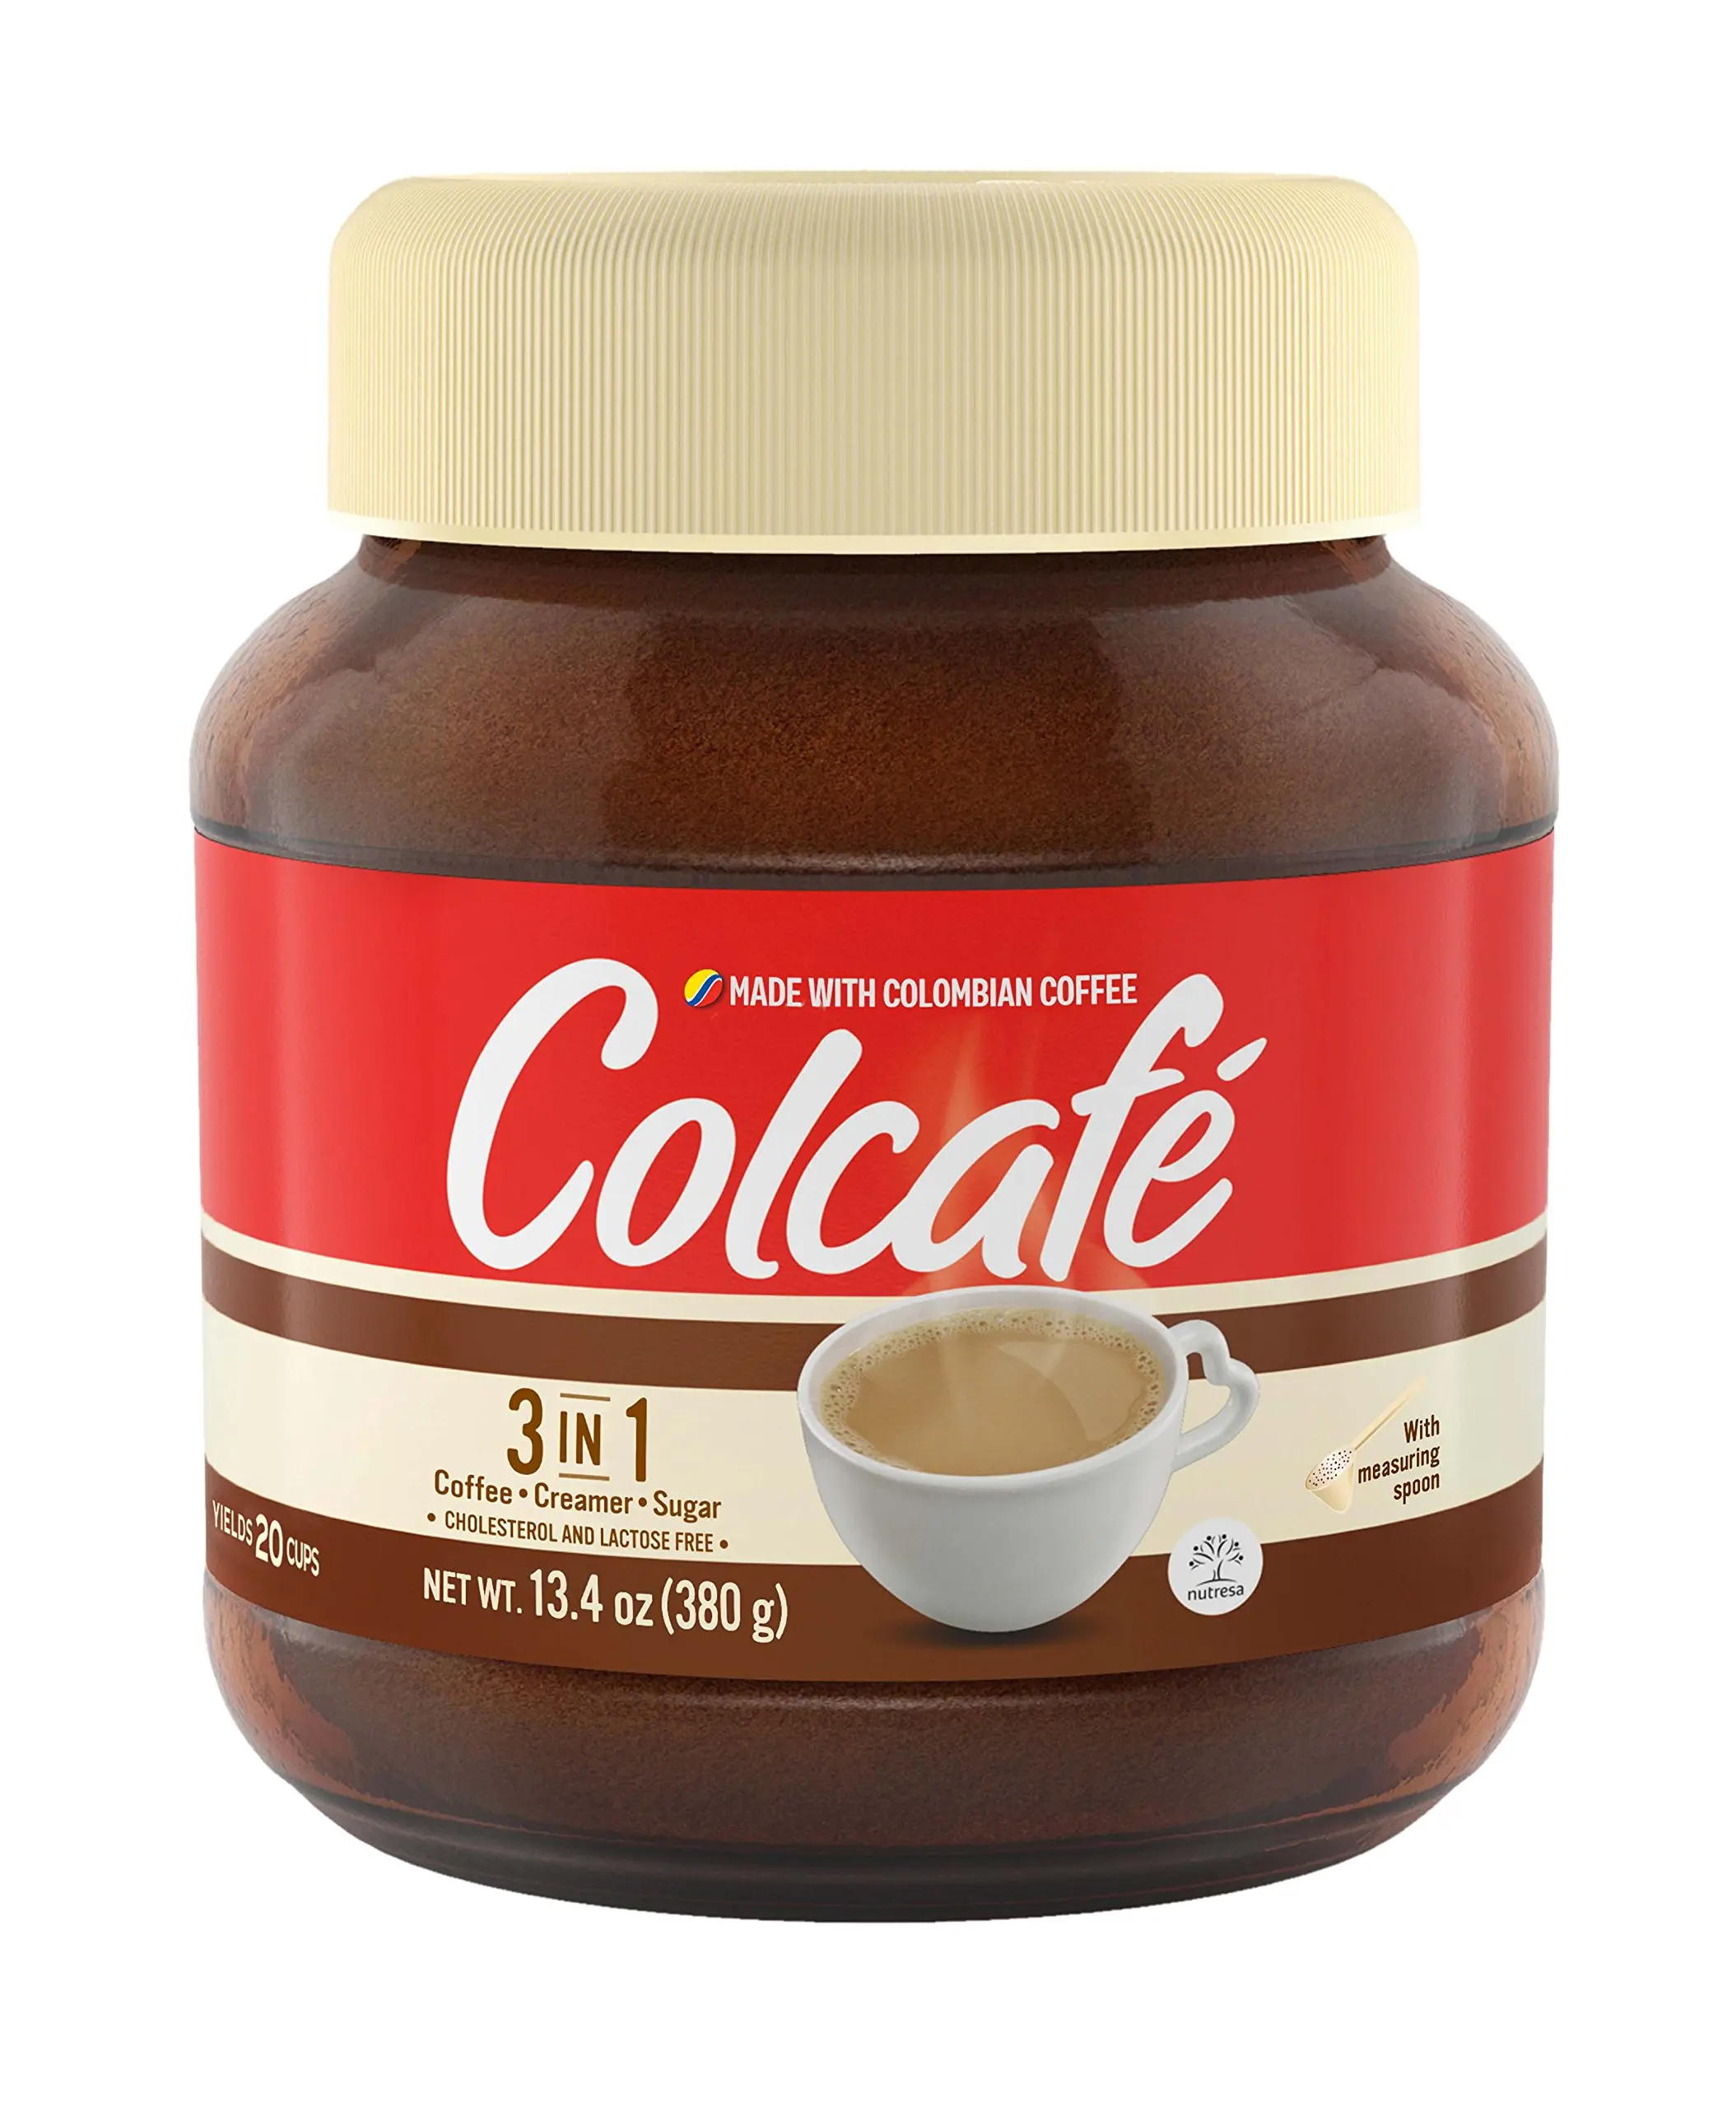 cafe colcafe - Cuántas calorías tiene el café Colcafé